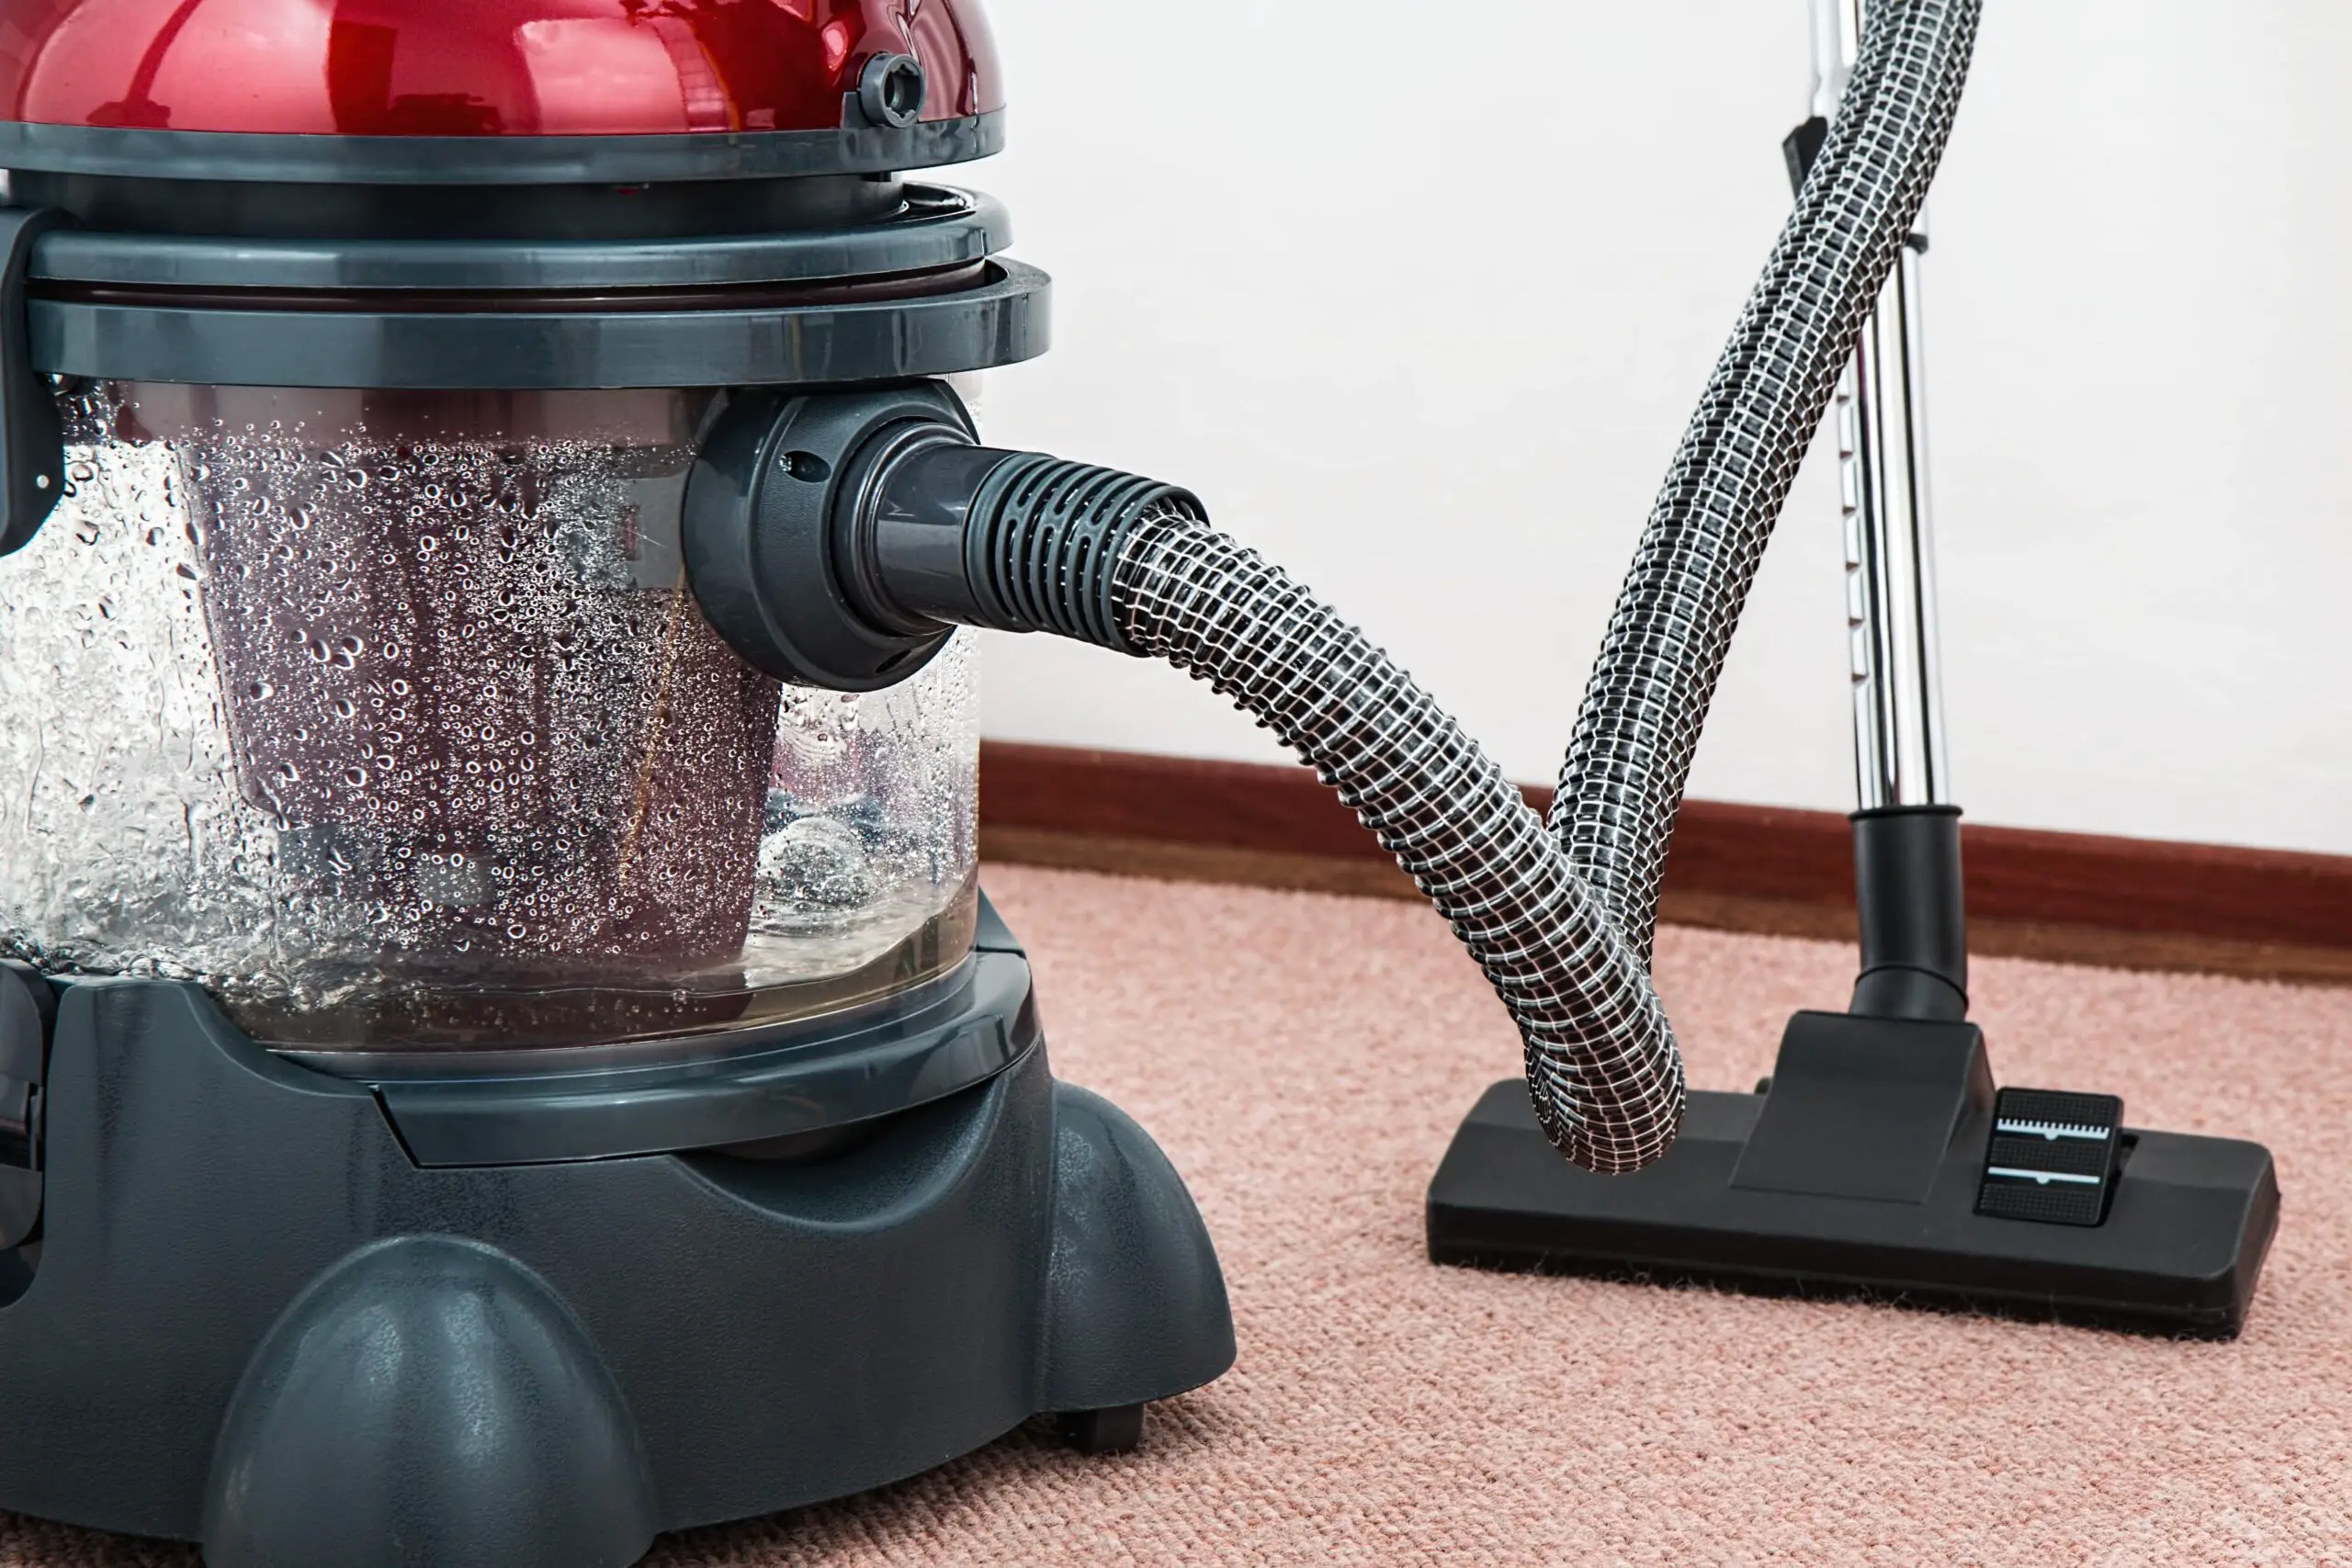 moosoo vacuum cleaner charging